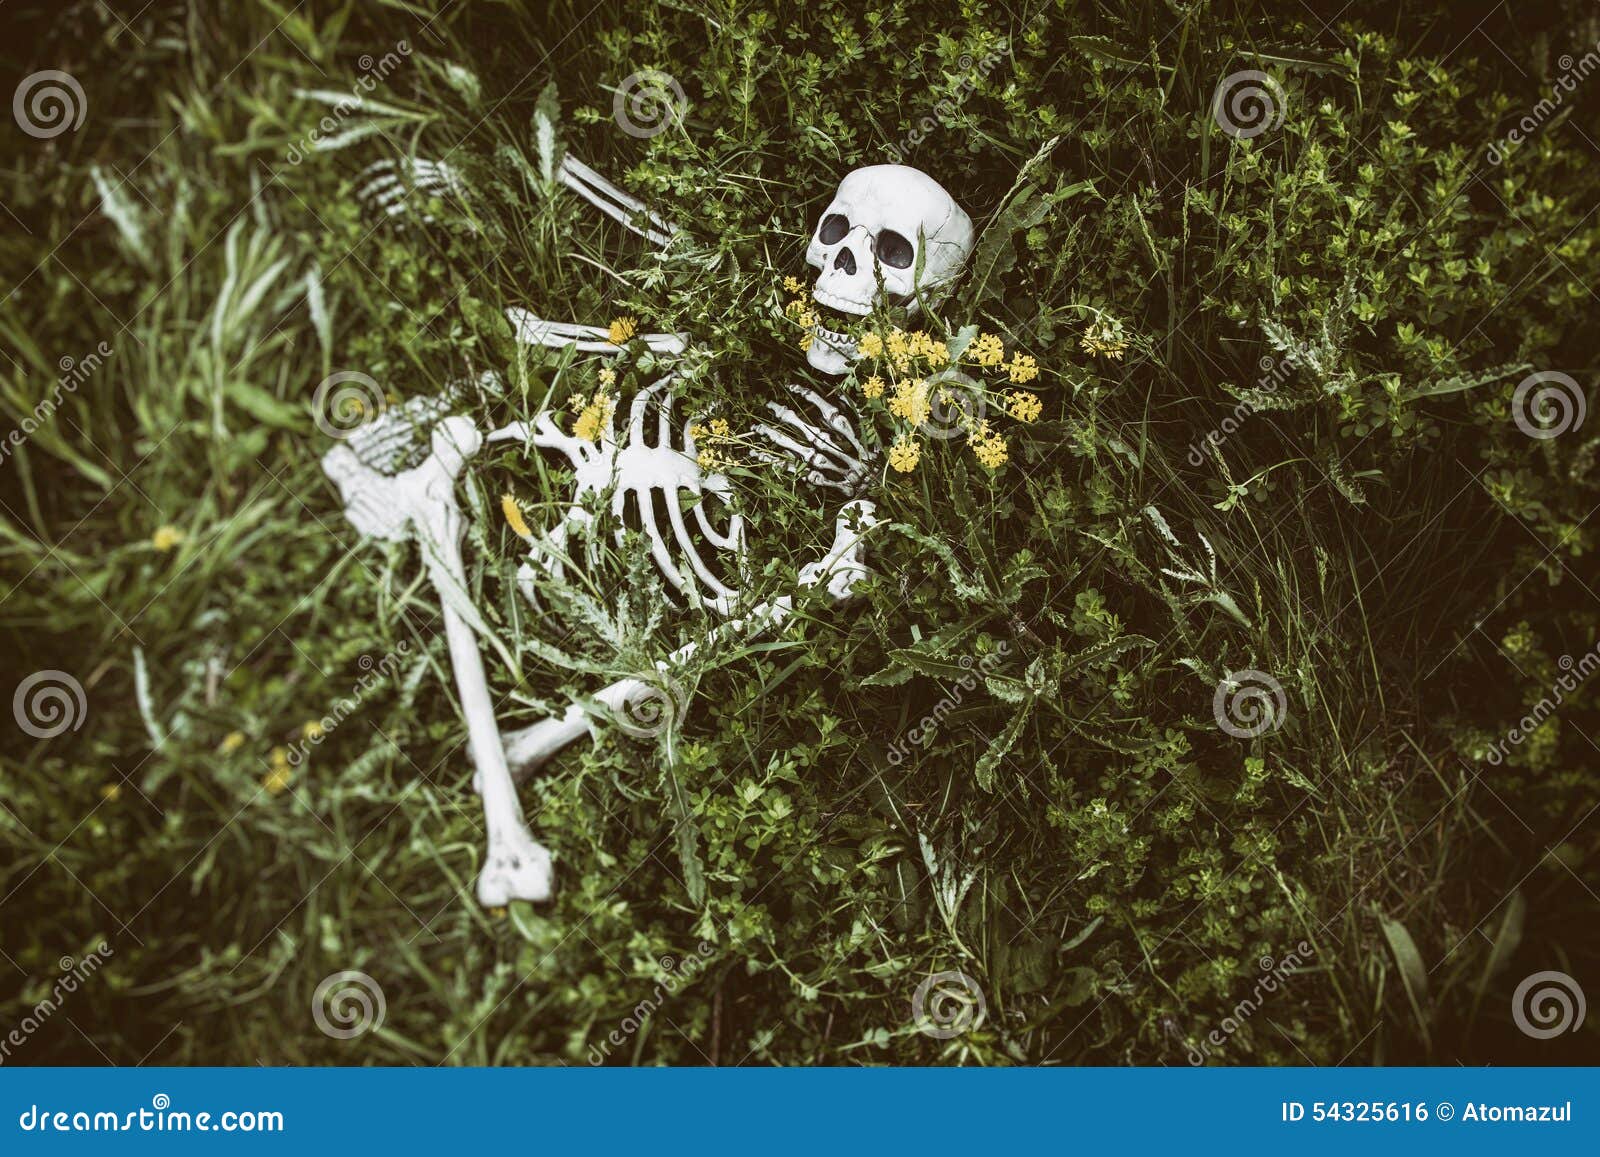 Авантюрист перевоплощается в скелета. Нашли скелет человека в лесу. Добрые скелетики в лесу.